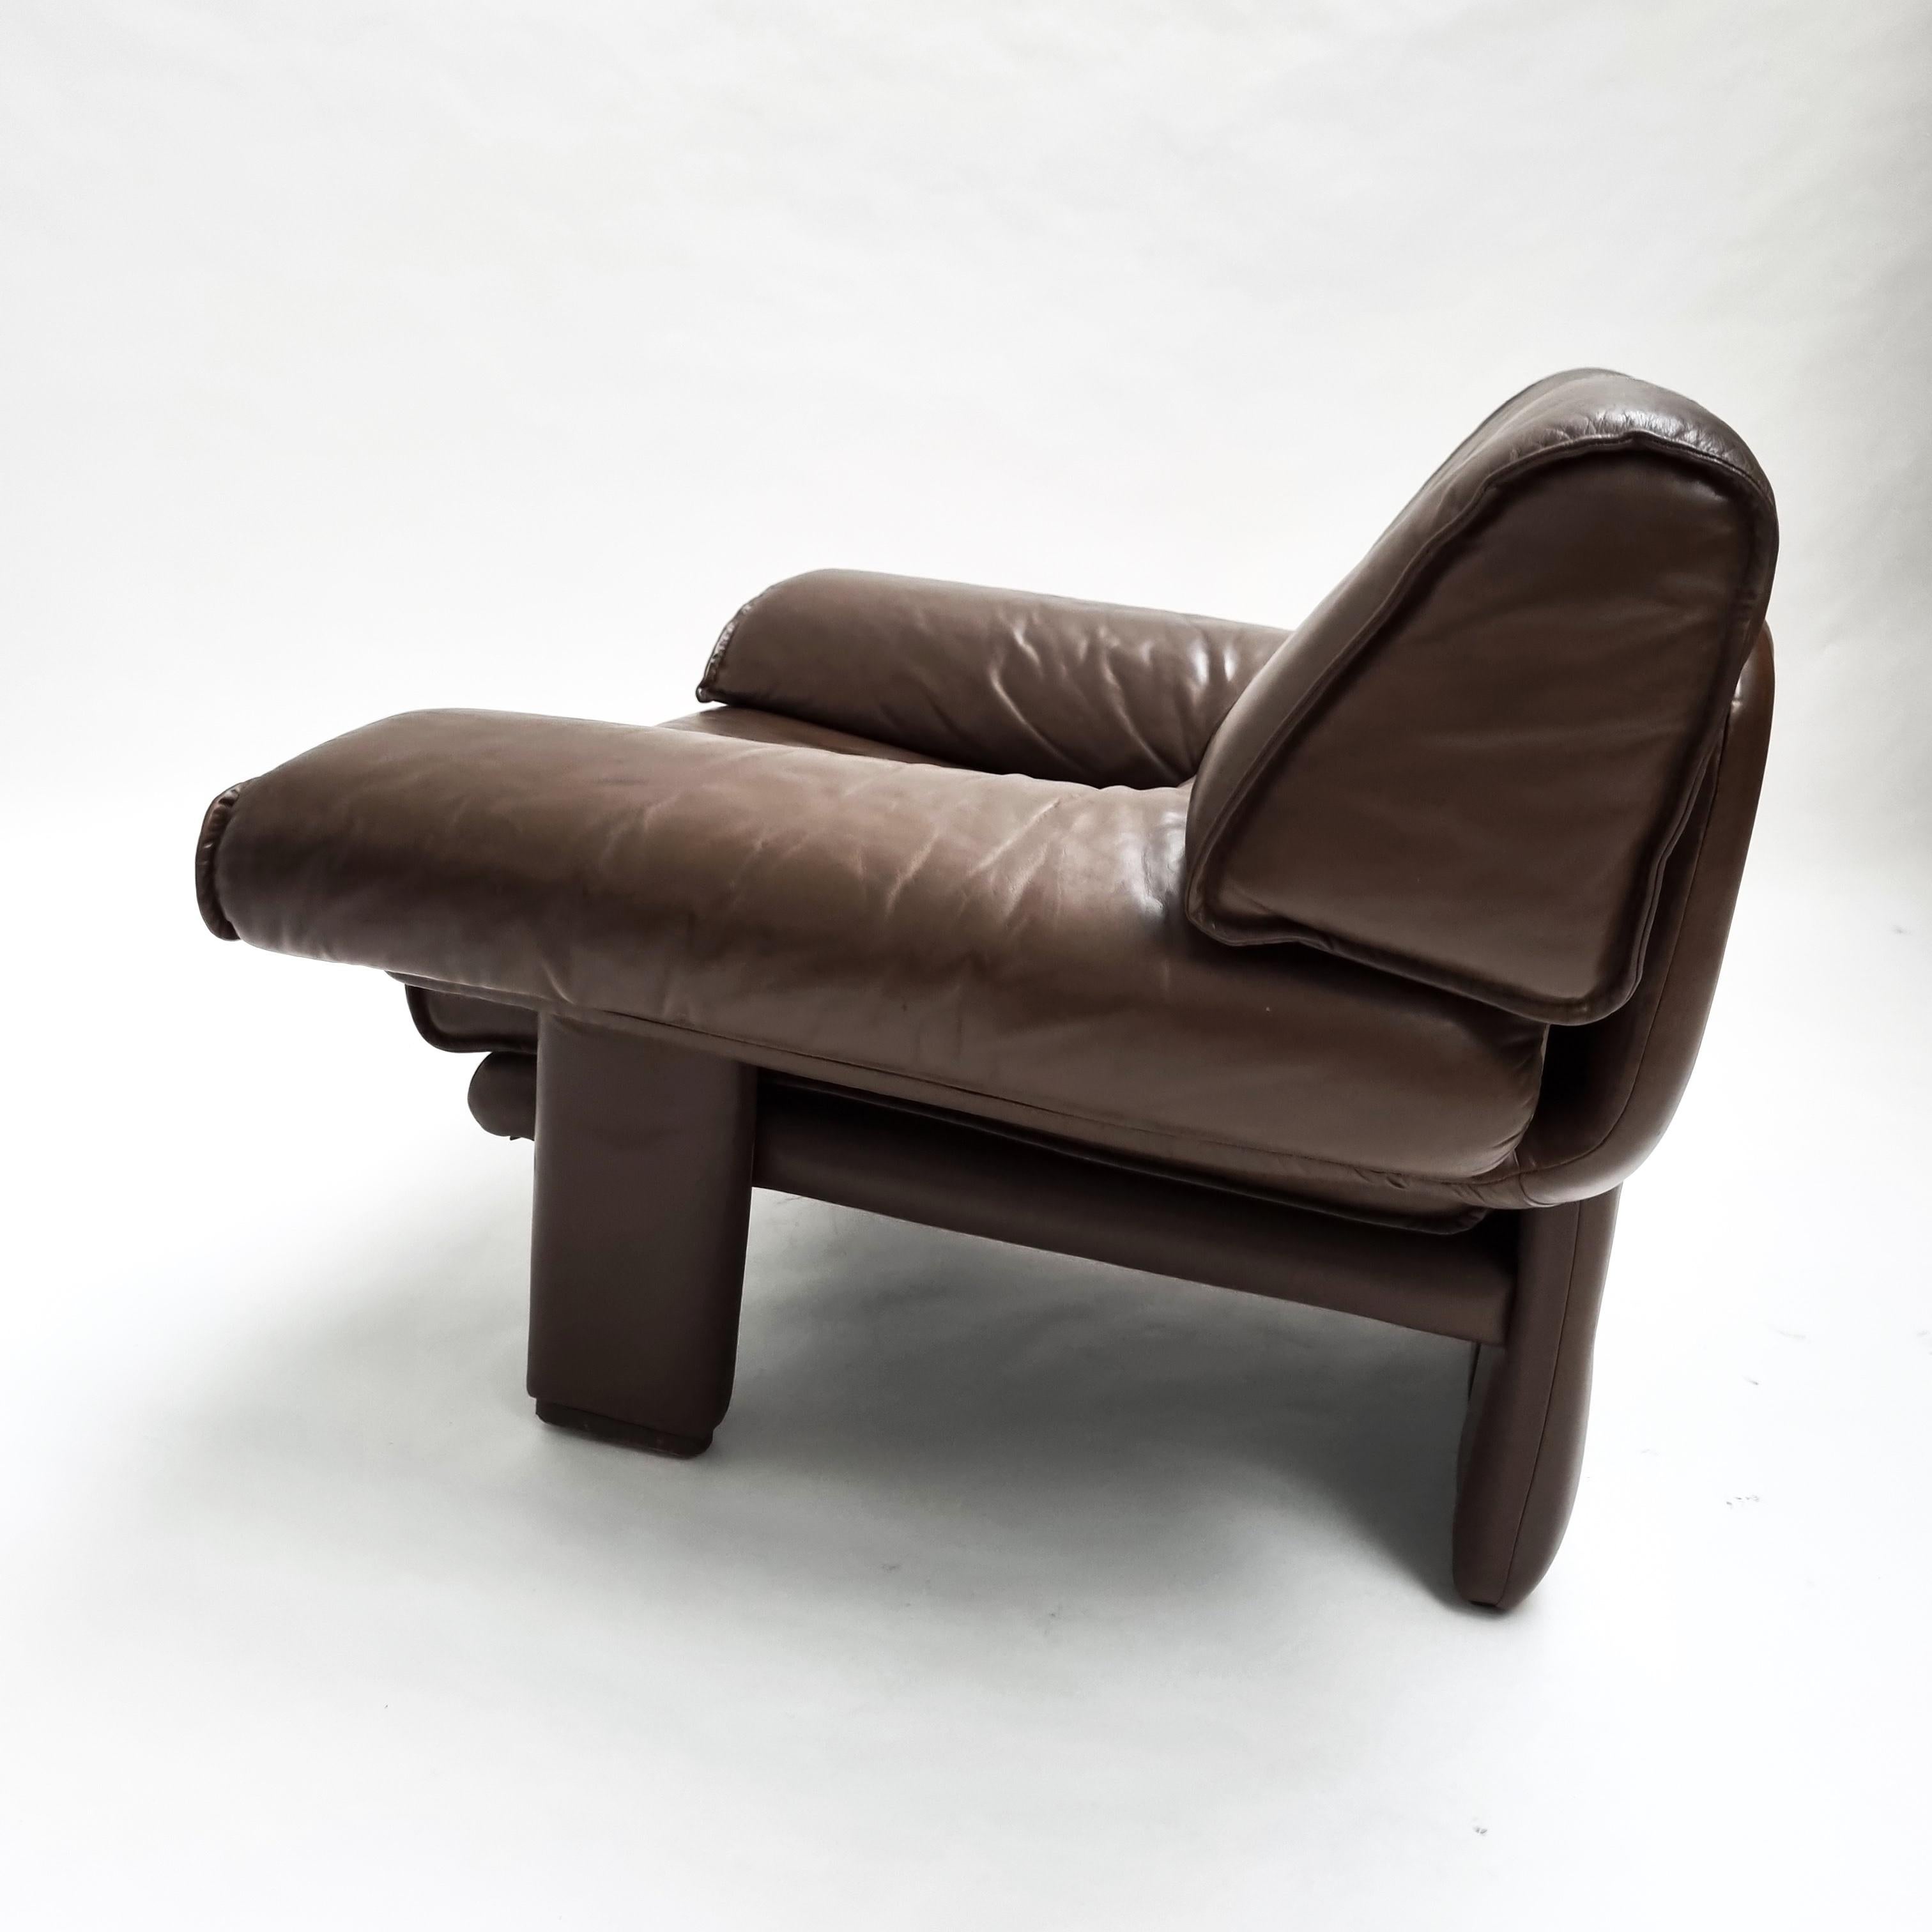 Loungesessel aus den 1970er Jahren. Tolle Form, bequeme Sitzposition, ein Schmuckstück für jeden Raum. Die Form ist schön, breite Armlehnen, abnehmbares Sitzpad. Schließlich ist der Stuhl mit einem hochwertigen, kastanienbraunen Leder mit gealterter